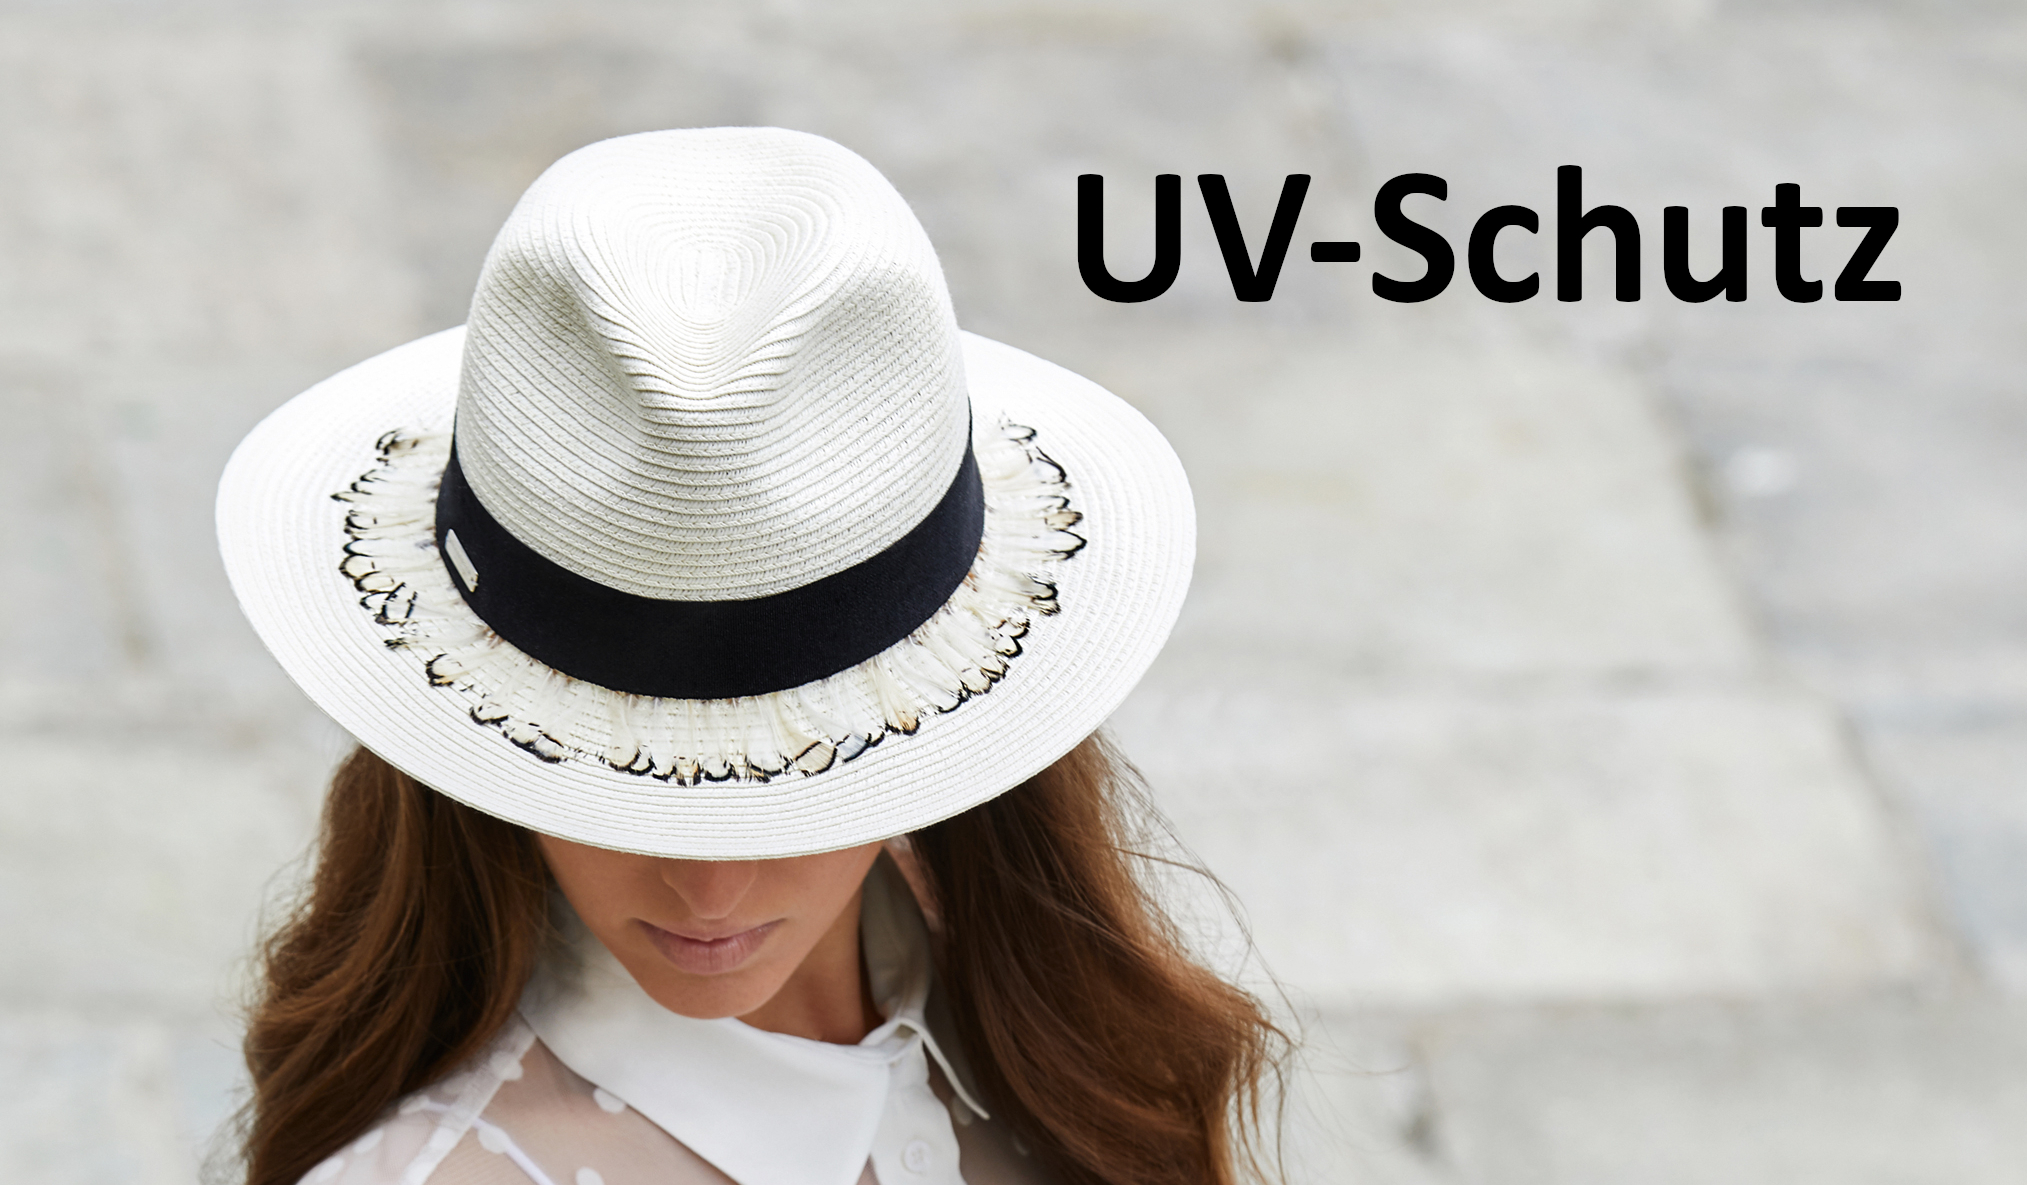 UV-Schutz für den Kopf